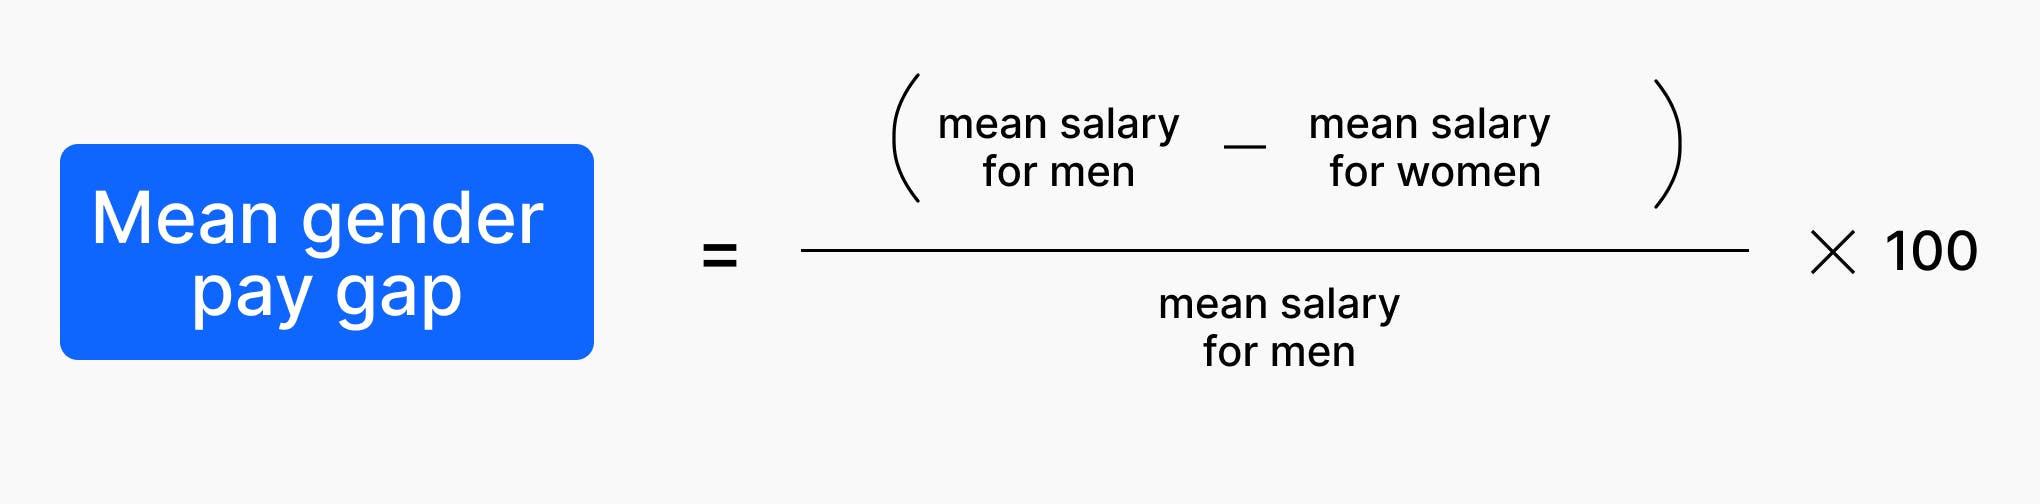 (mean salary for men – mean salary for women) / mean salary for men x 100